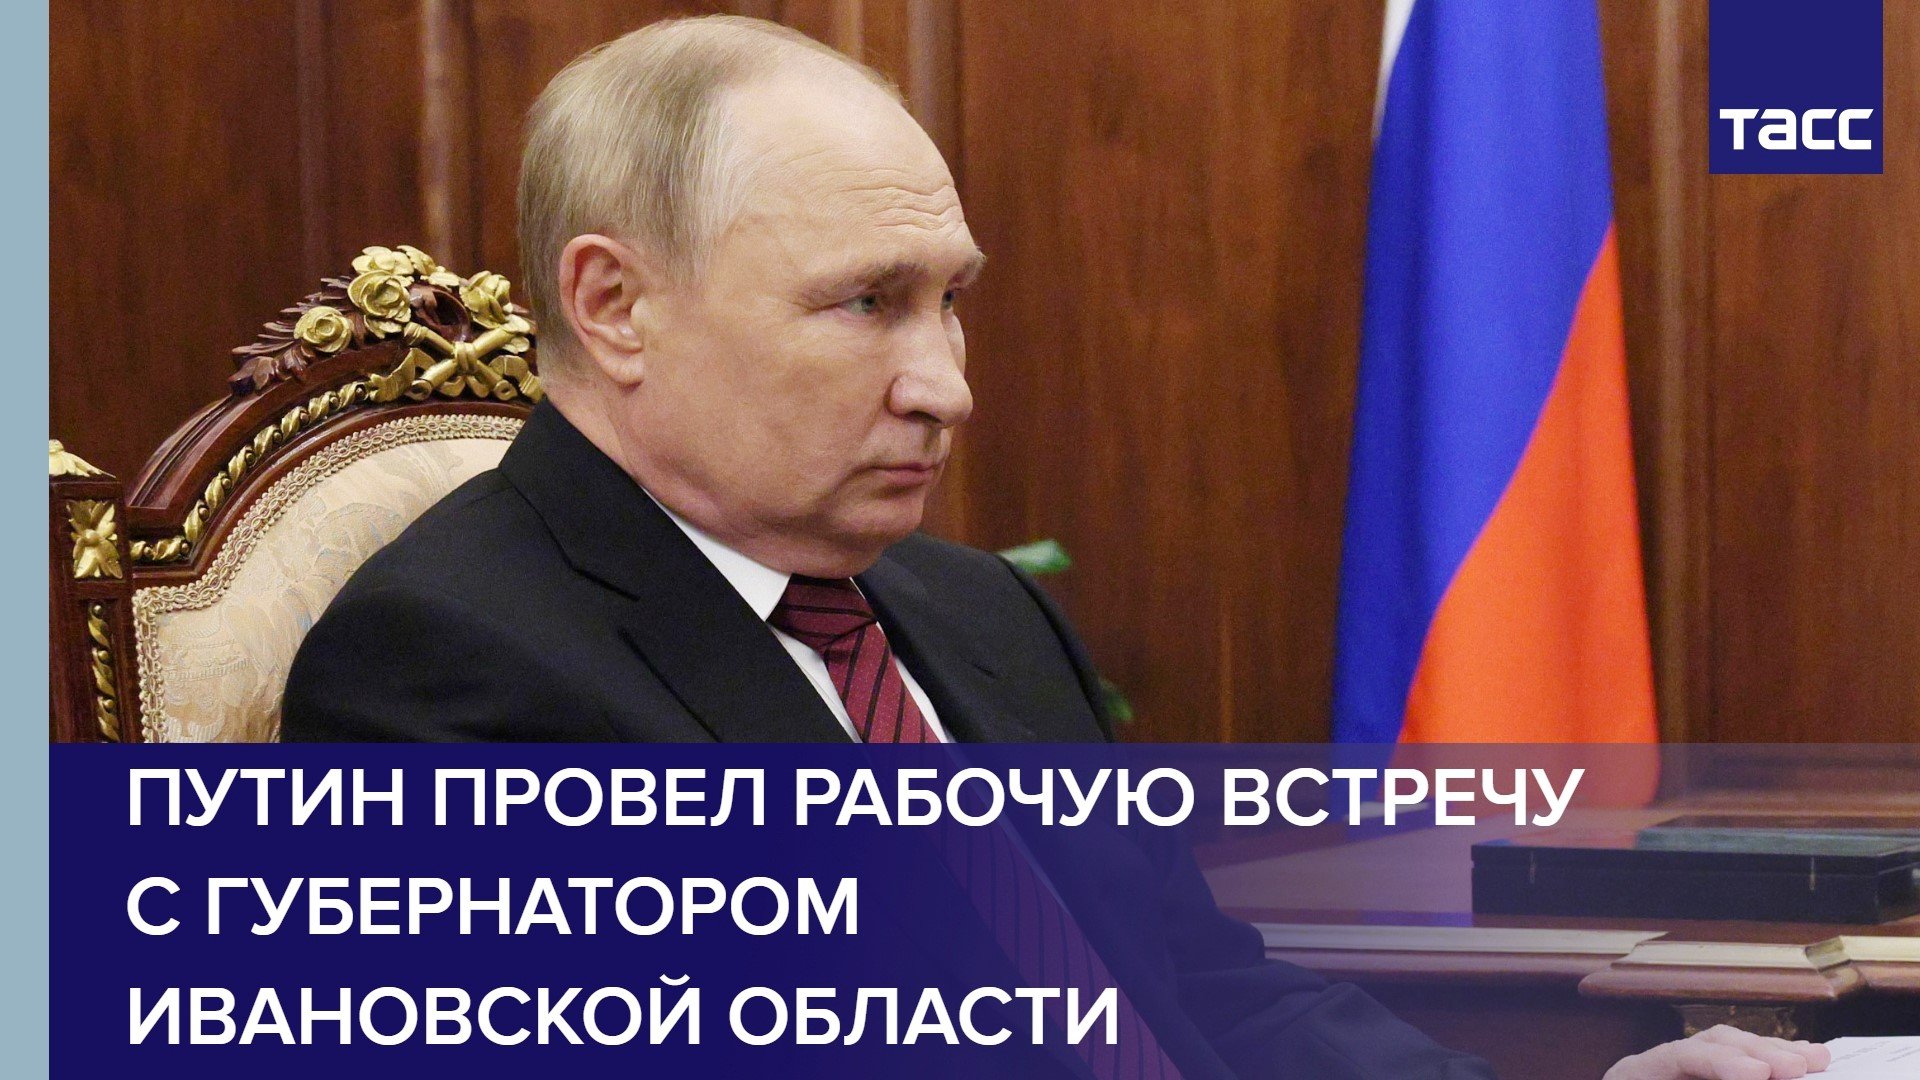 Путин провел рабочую встречу с губернатором Ивановской области